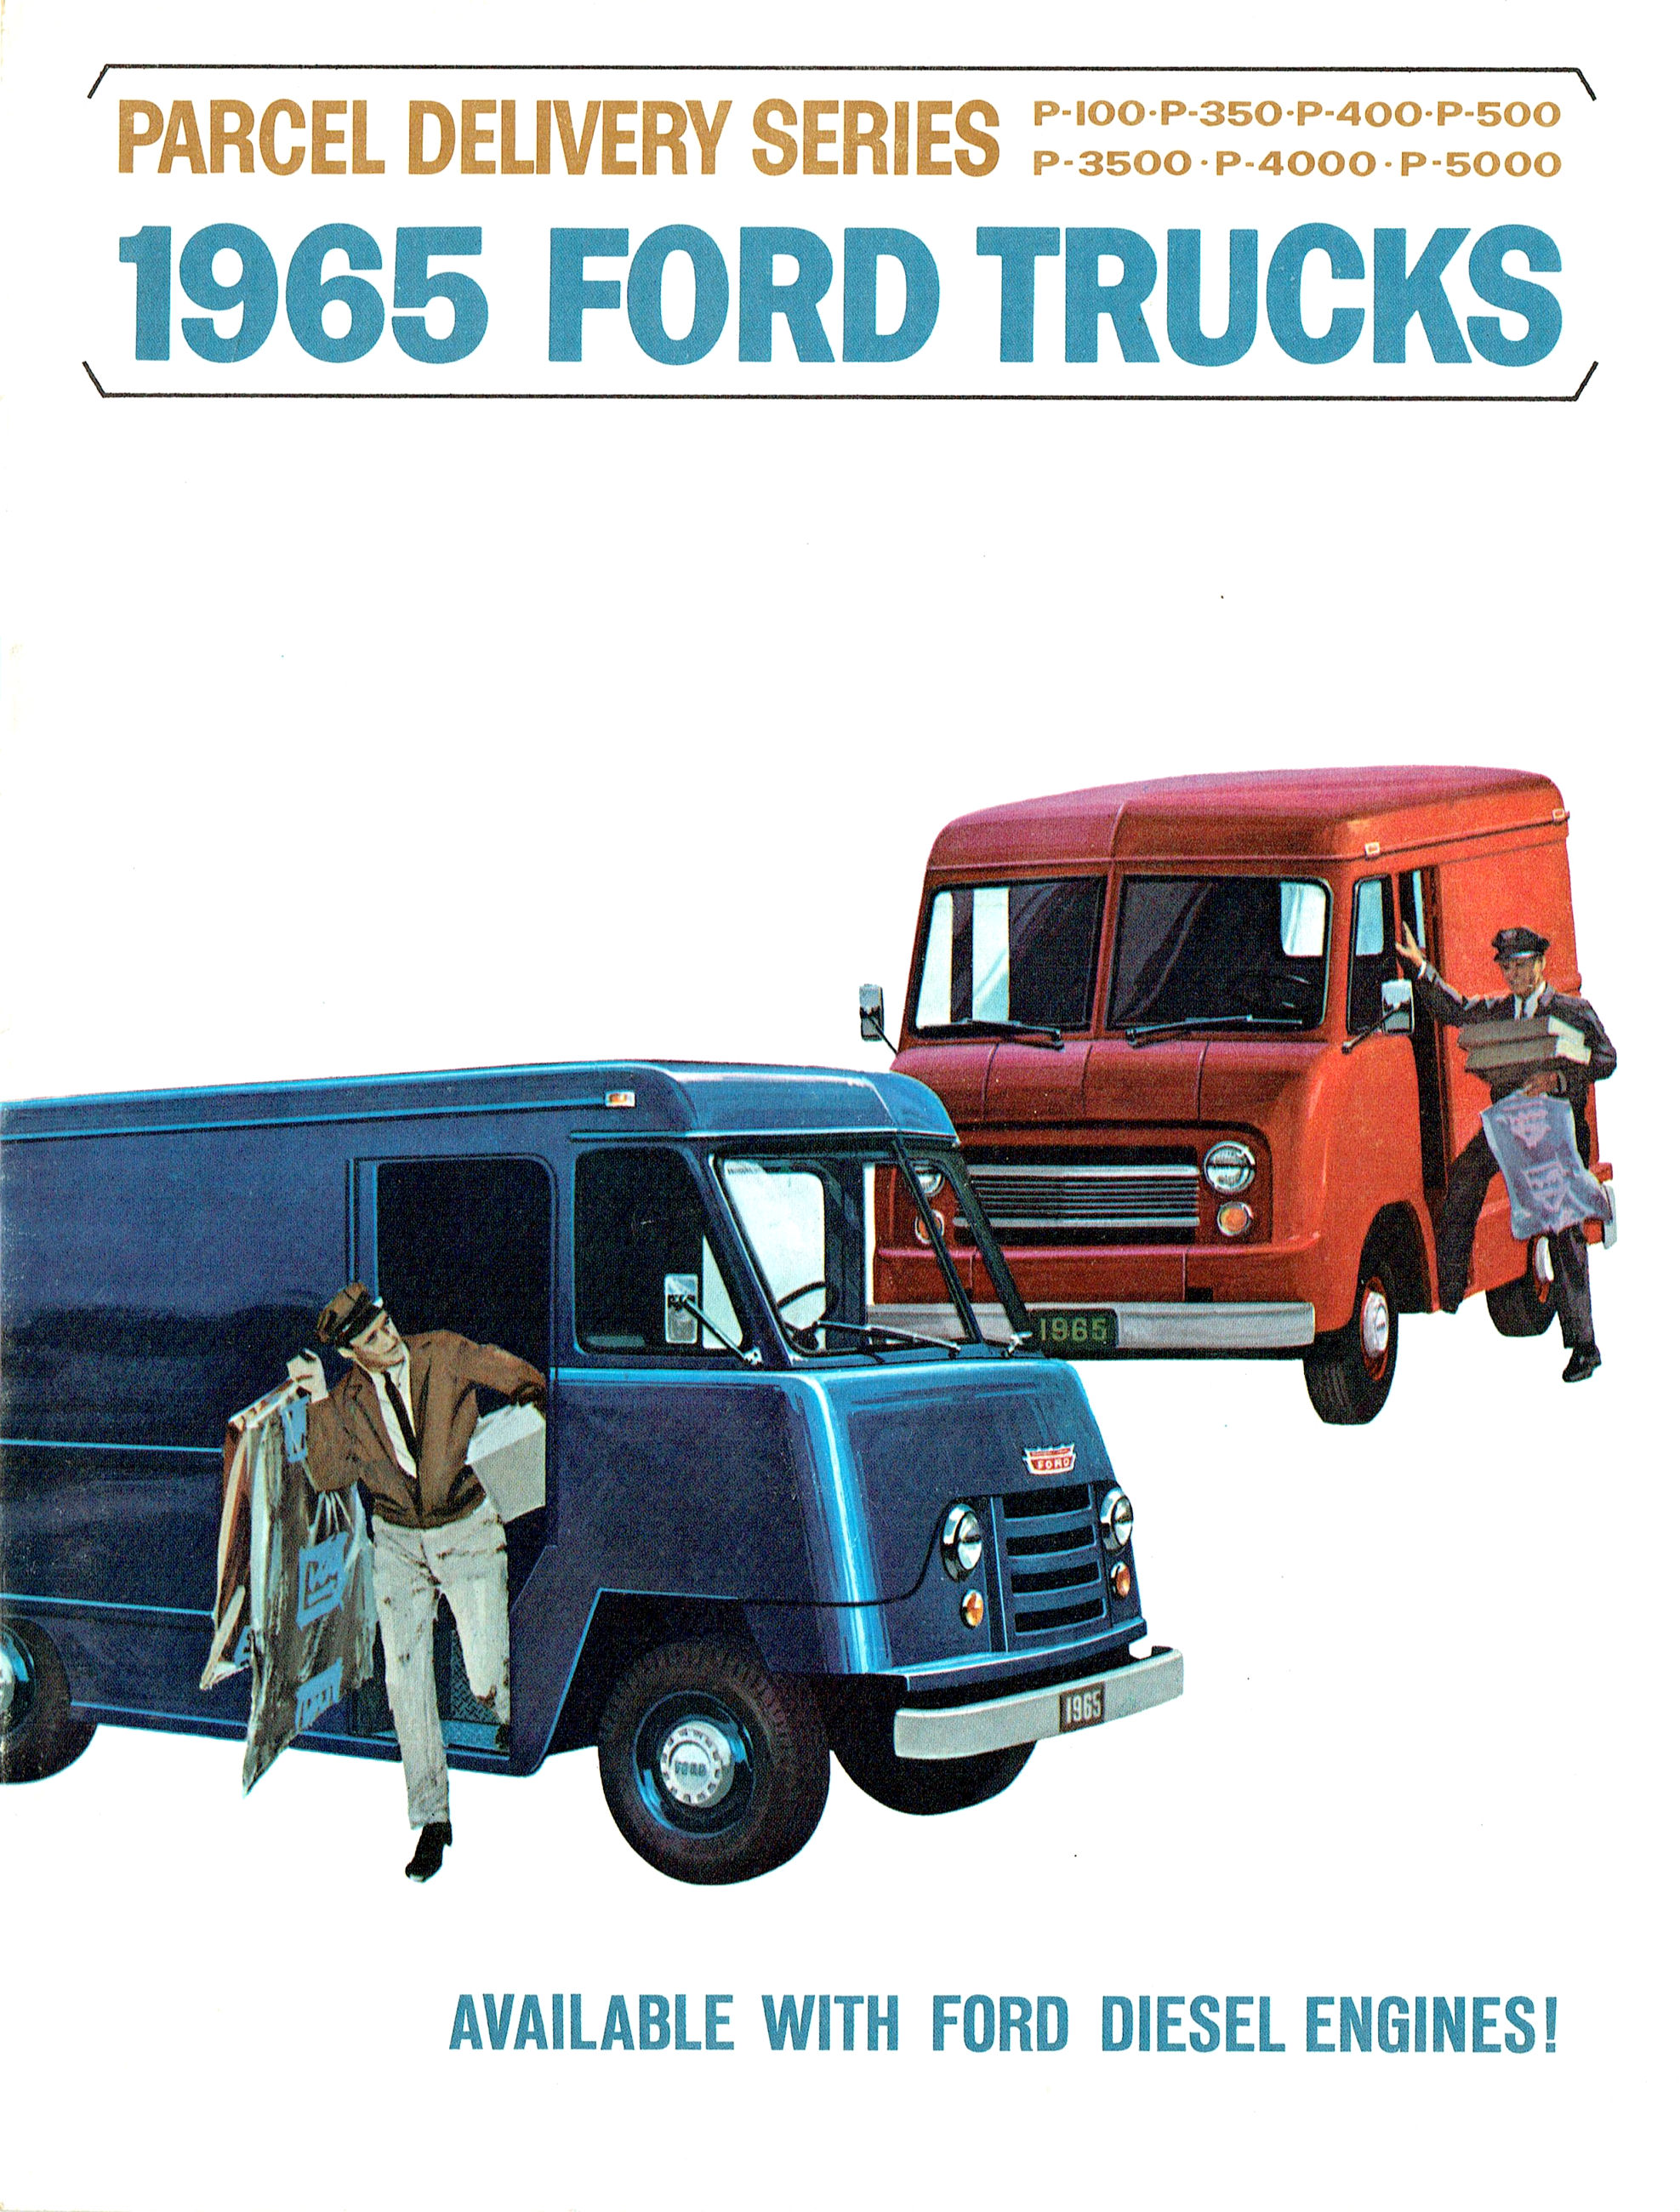 1965 Ford Parcel Delivery (Rev)-01